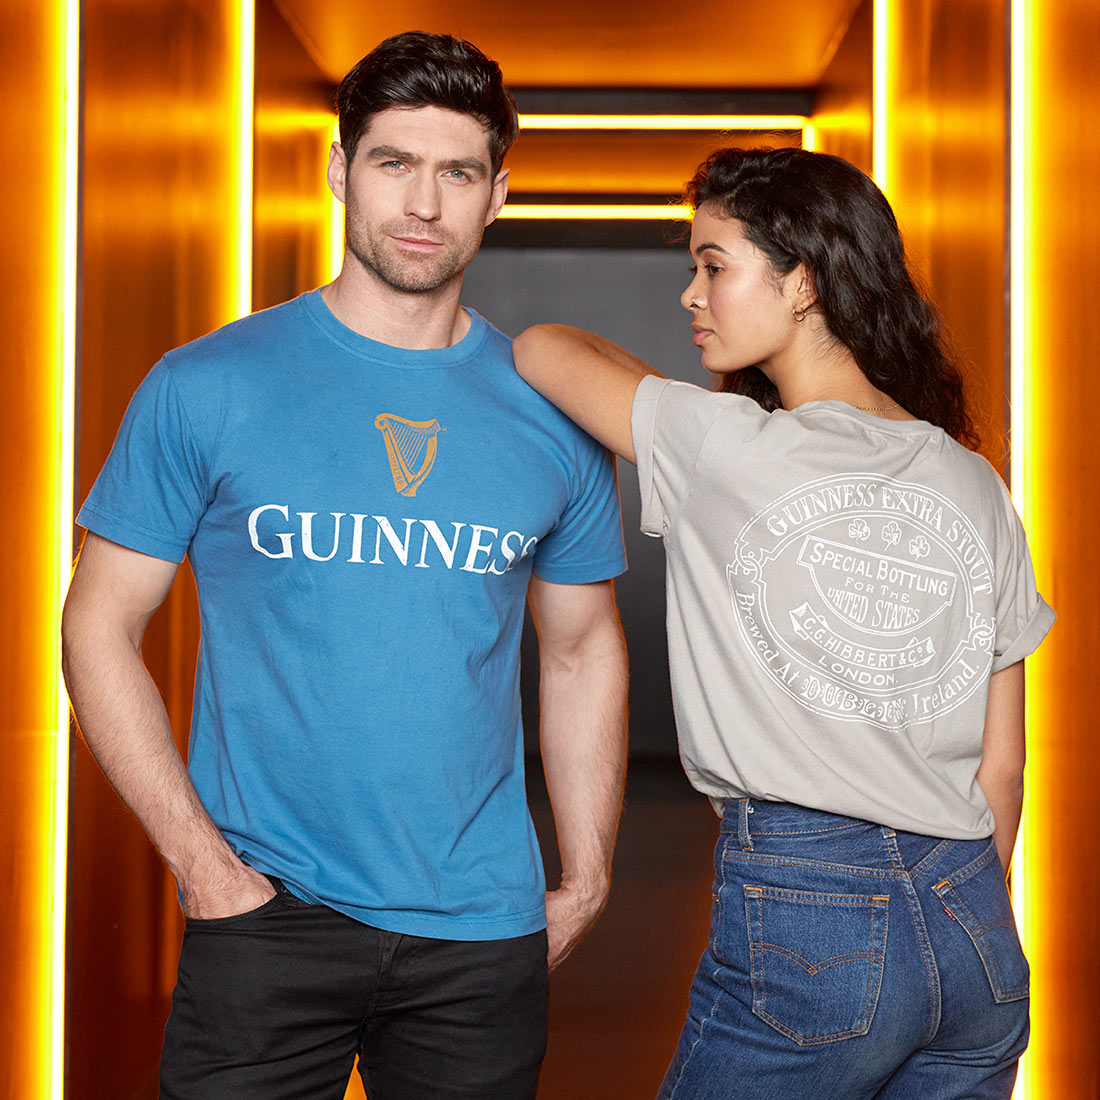 Sky Blue Guinness Harp Premium T-Shirt by Guinness UK.